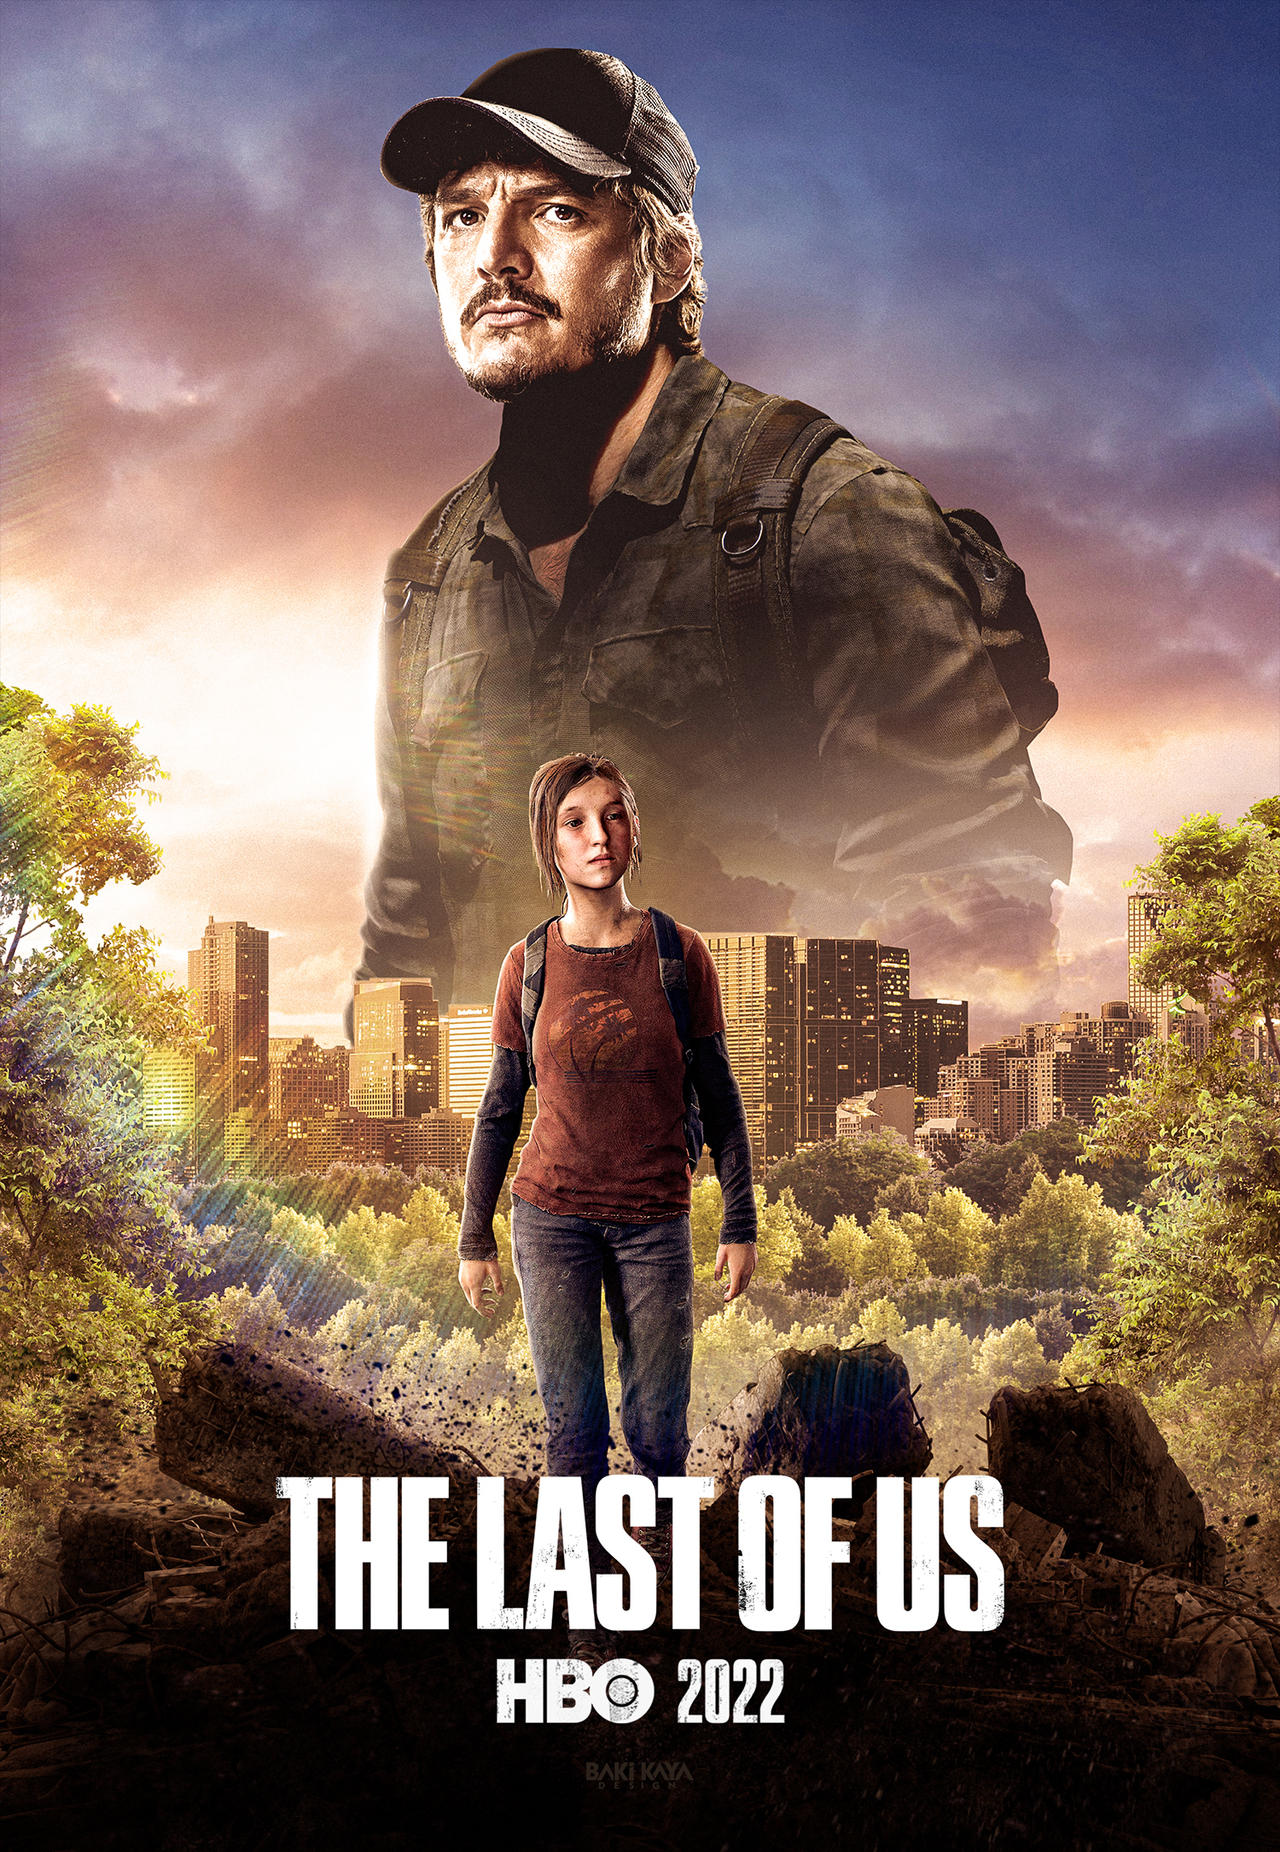 The Last of Us (2022) Poster by bakikayaa on DeviantArt